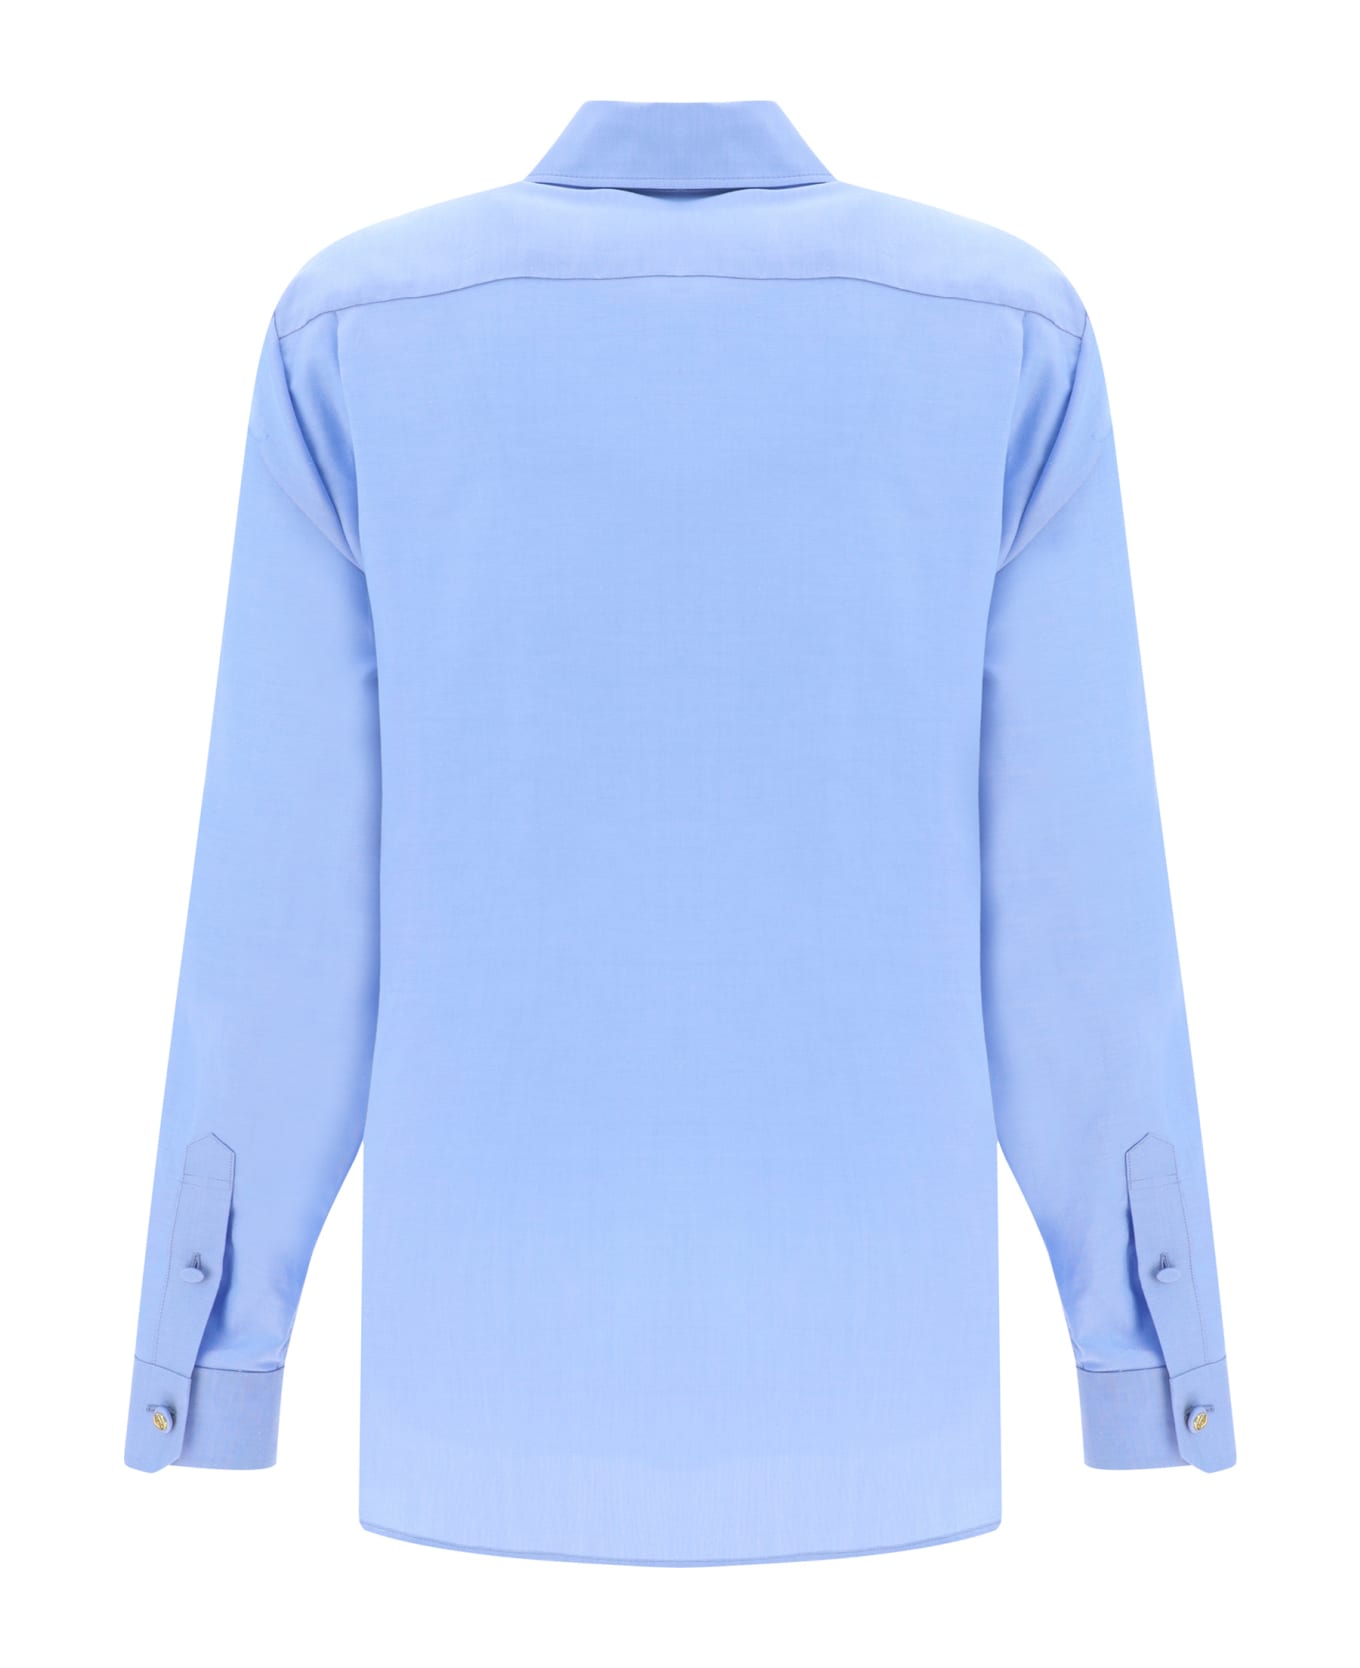 Gucci Shirt - Clear Blue